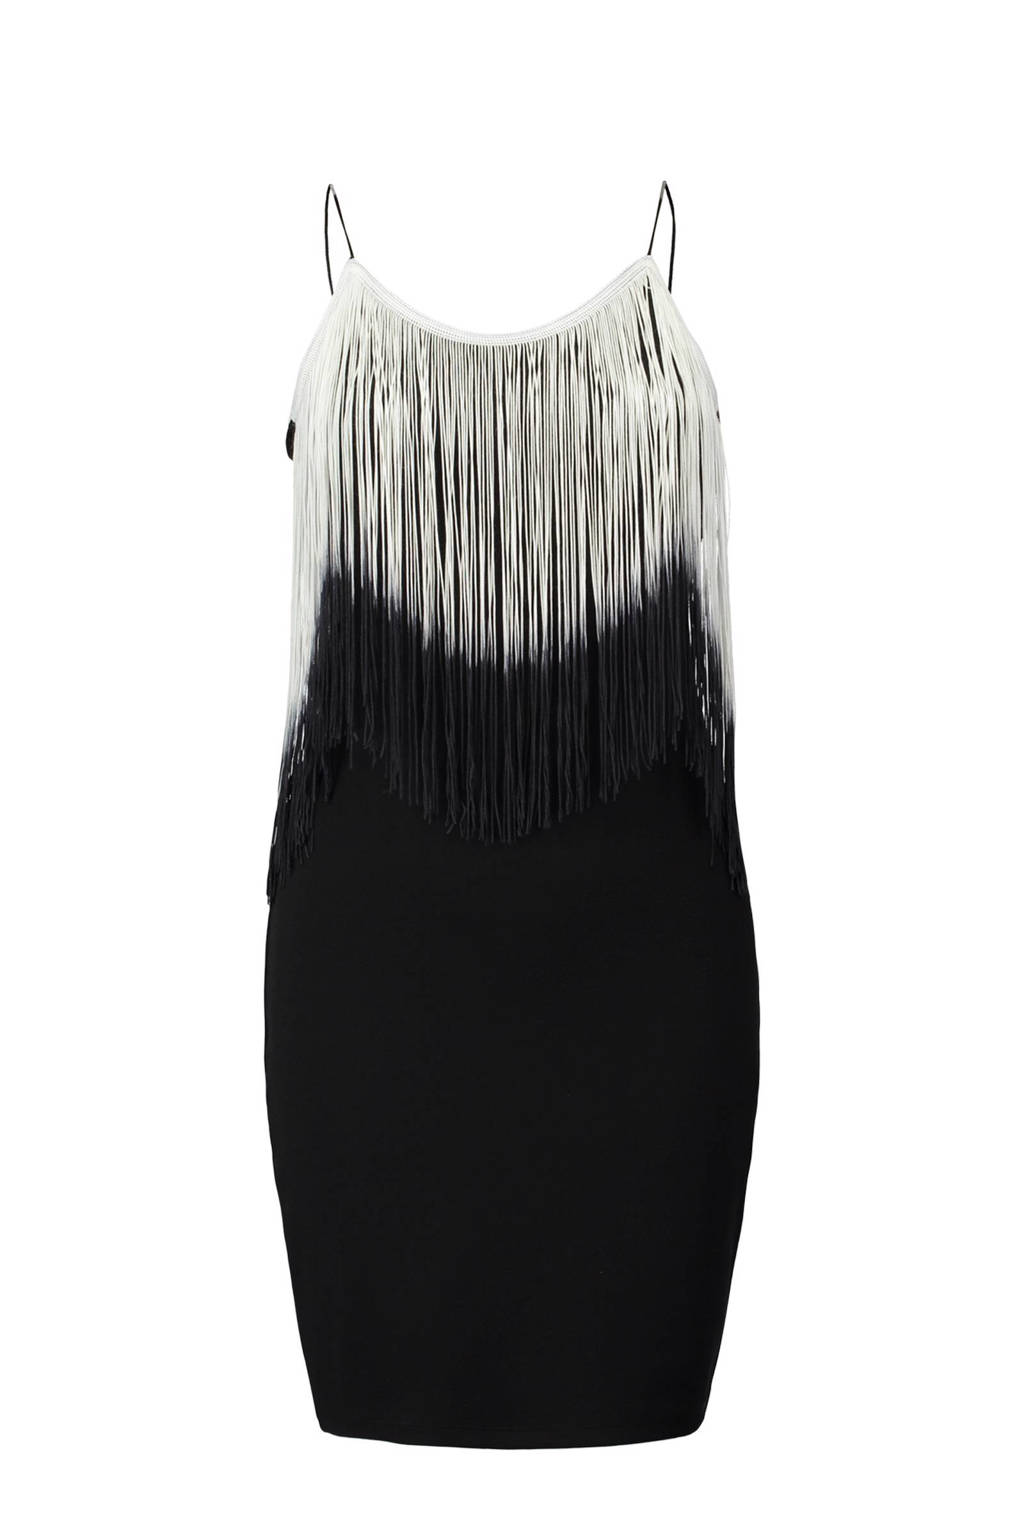 brandwonden Ziektecijfers vinger CoolCat jurk met franje zwart | wehkamp